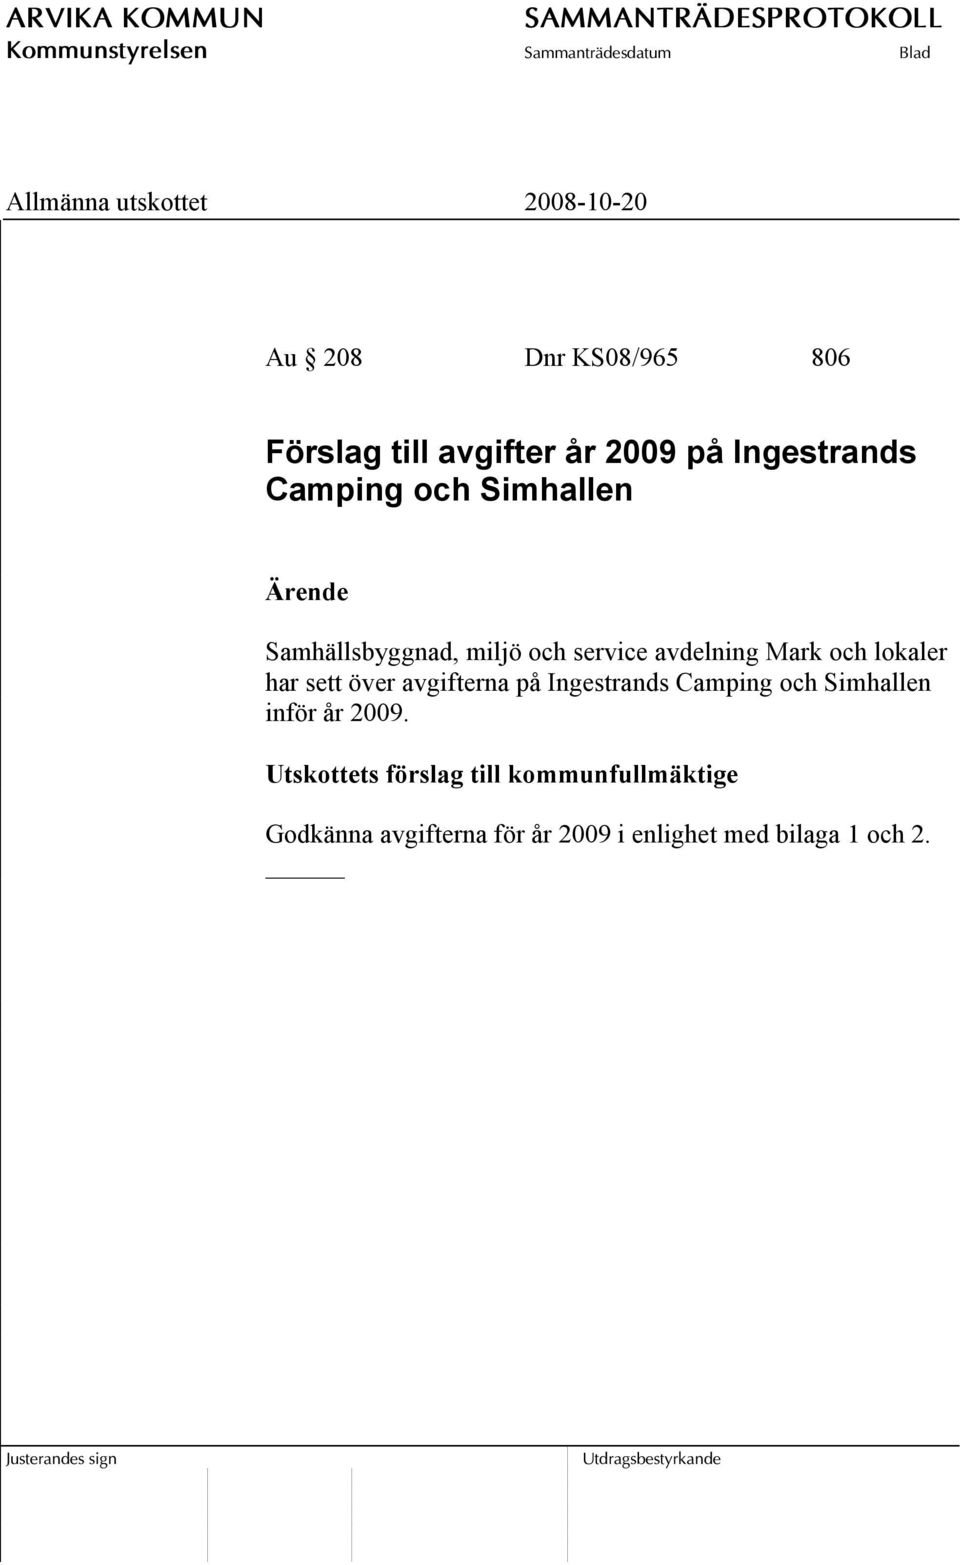 över avgifterna på Ingestrands Camping och Simhallen inför år 2009.